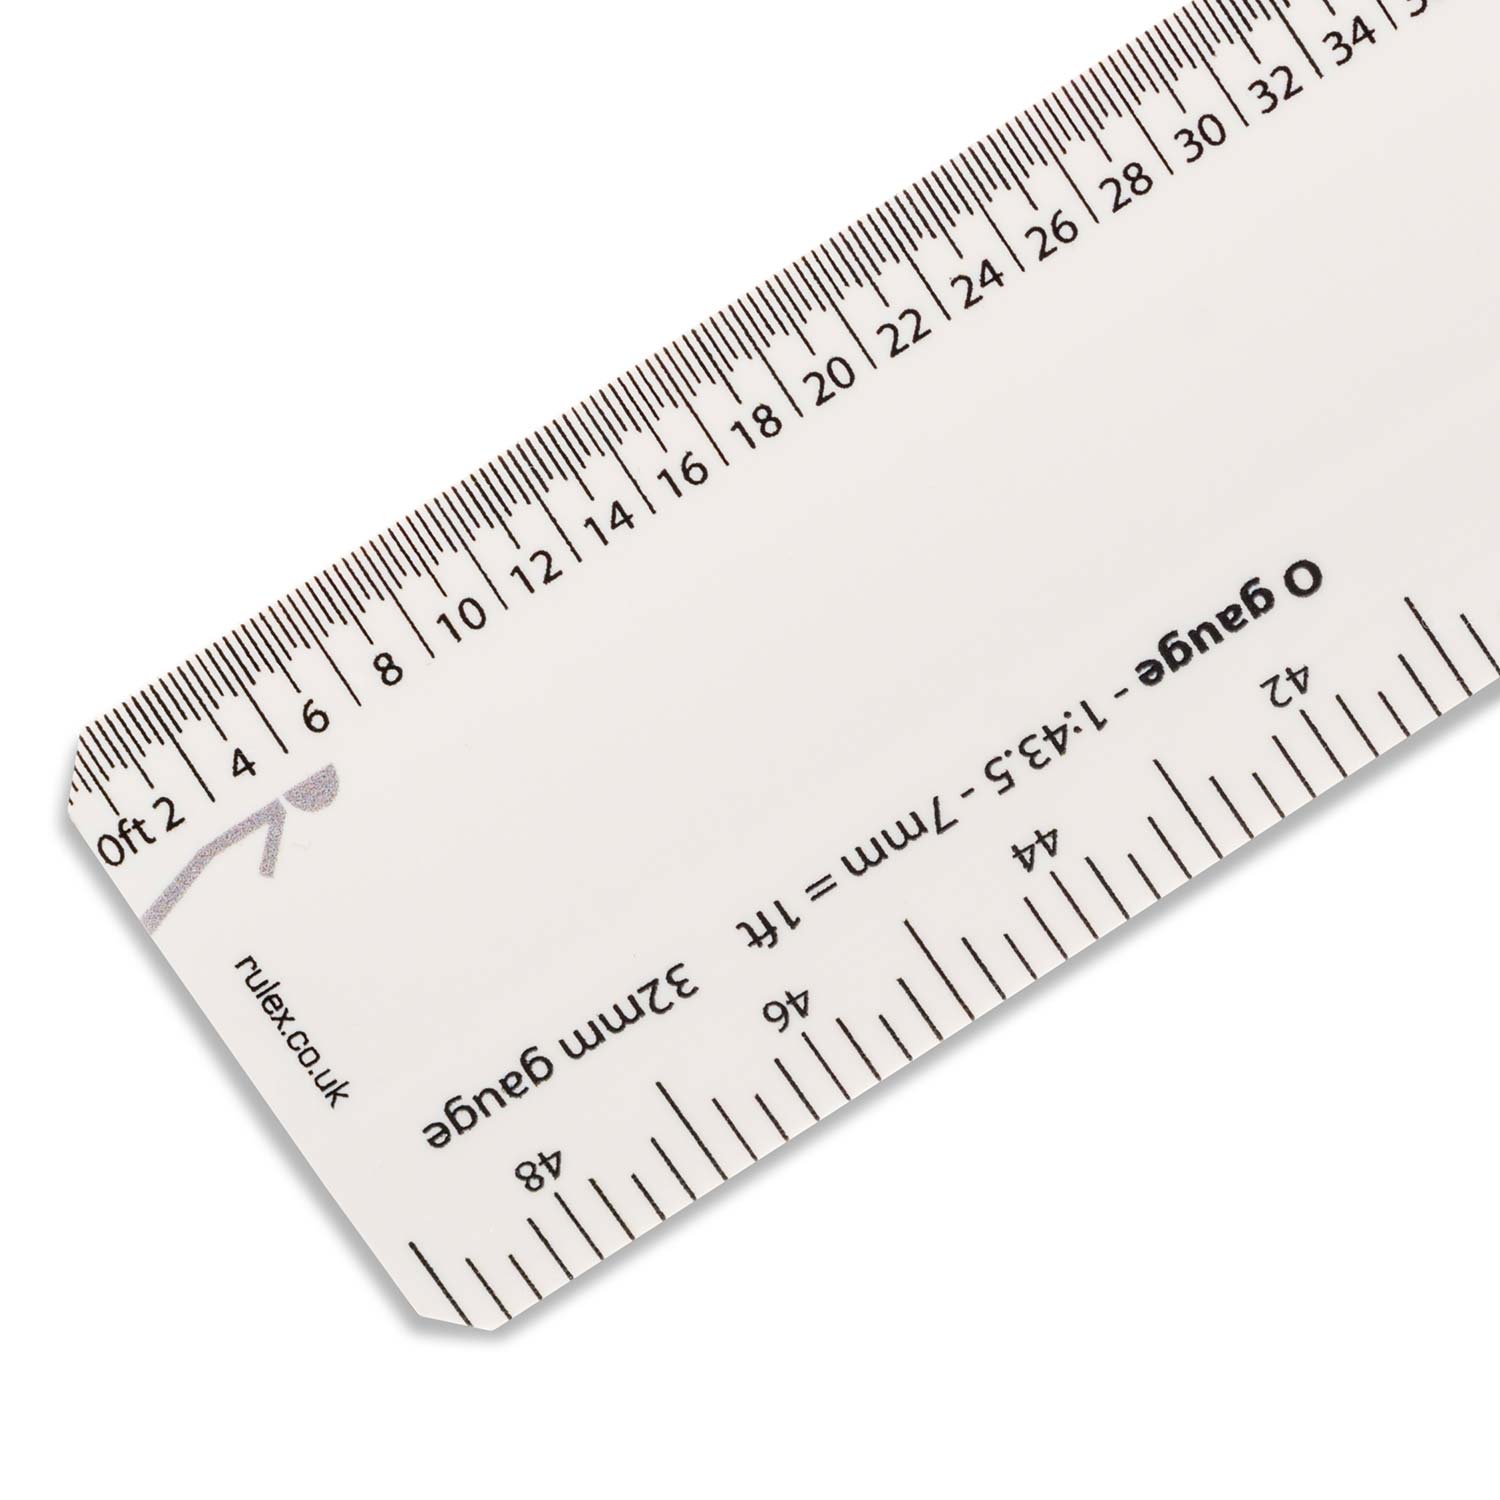 7mm ruler